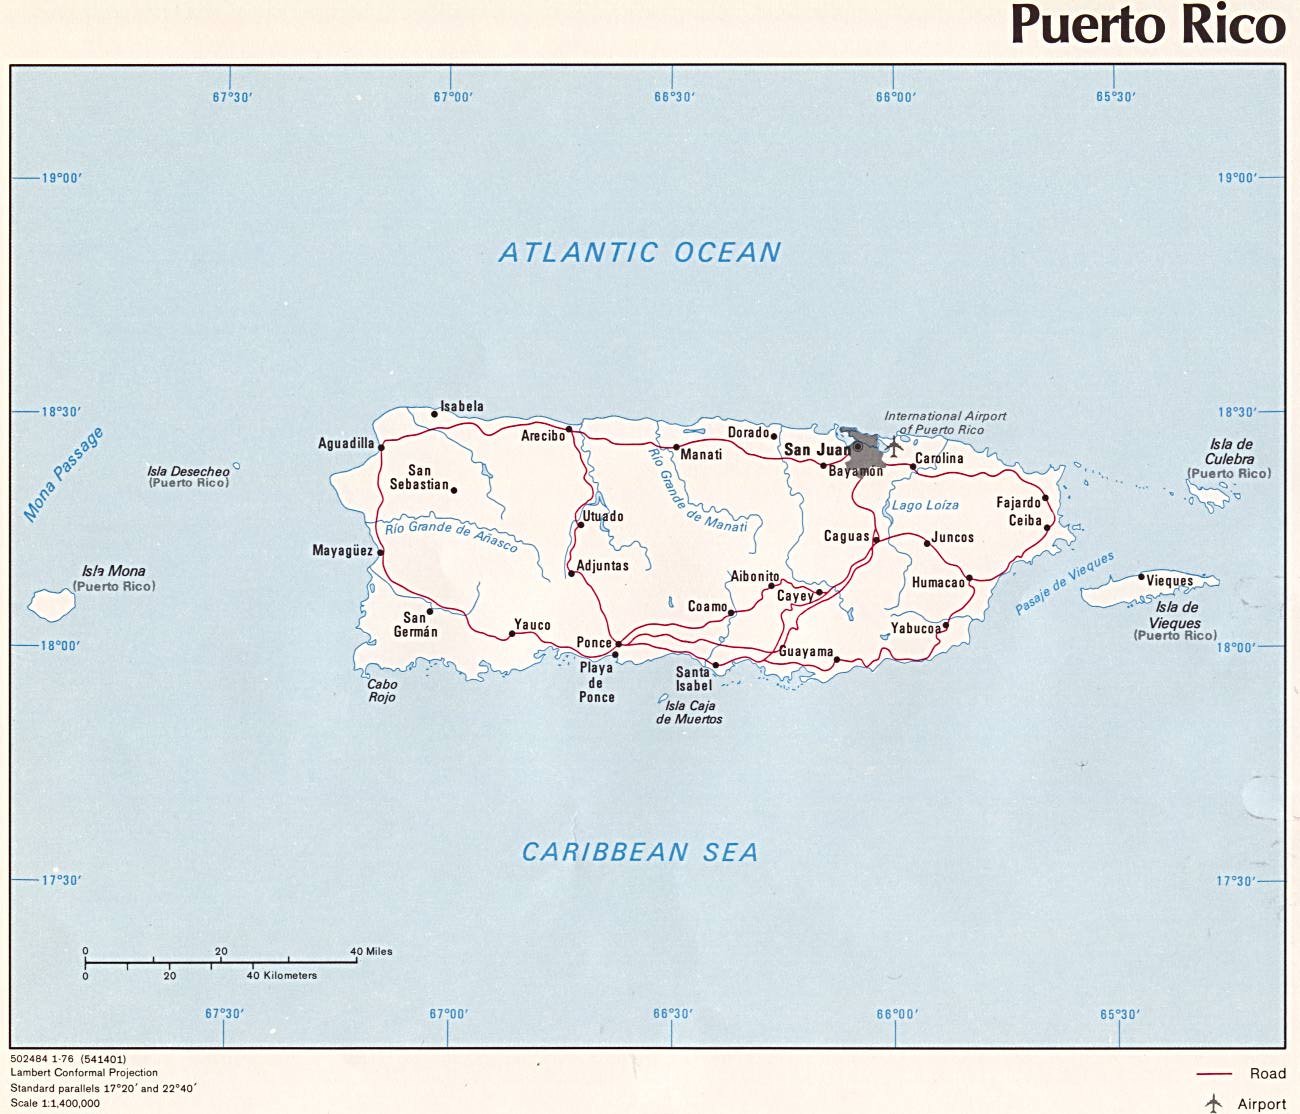 Mapa Político de Puerto Rico